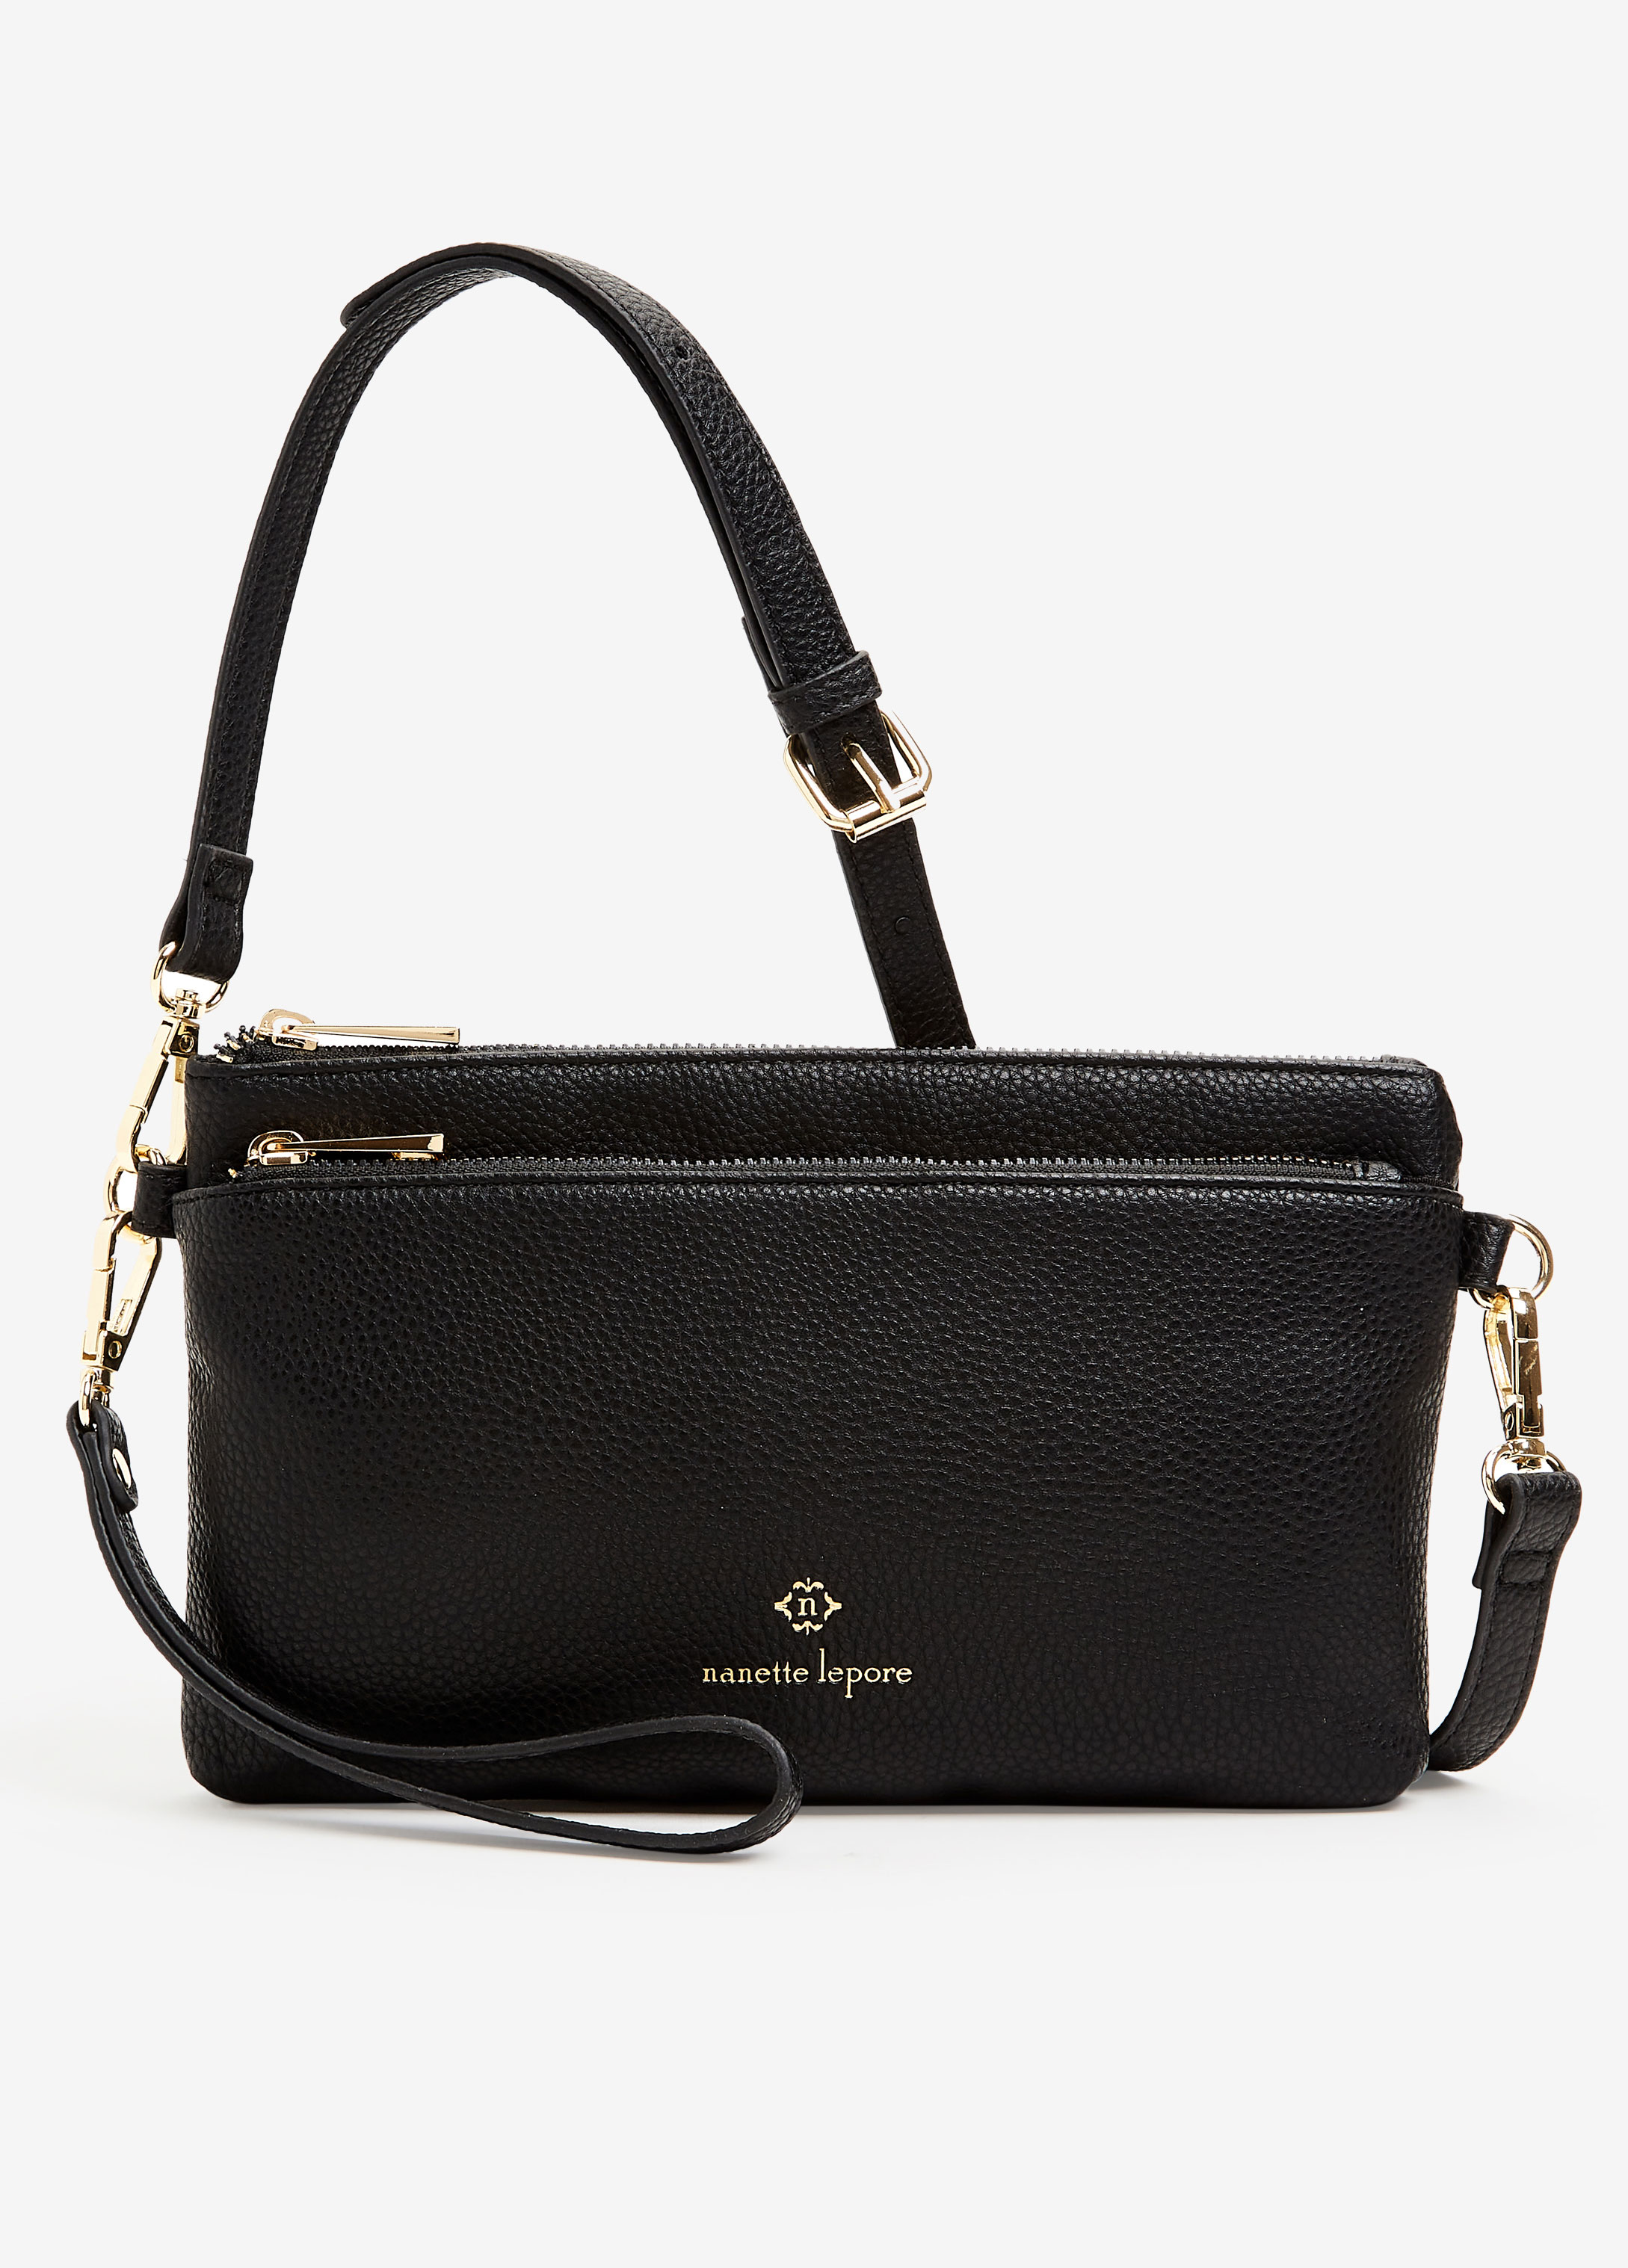 Nanette Lepore Marlowe Bag Shoulder Handbag Tote Satchel Purse Vegan  Leather | eBay